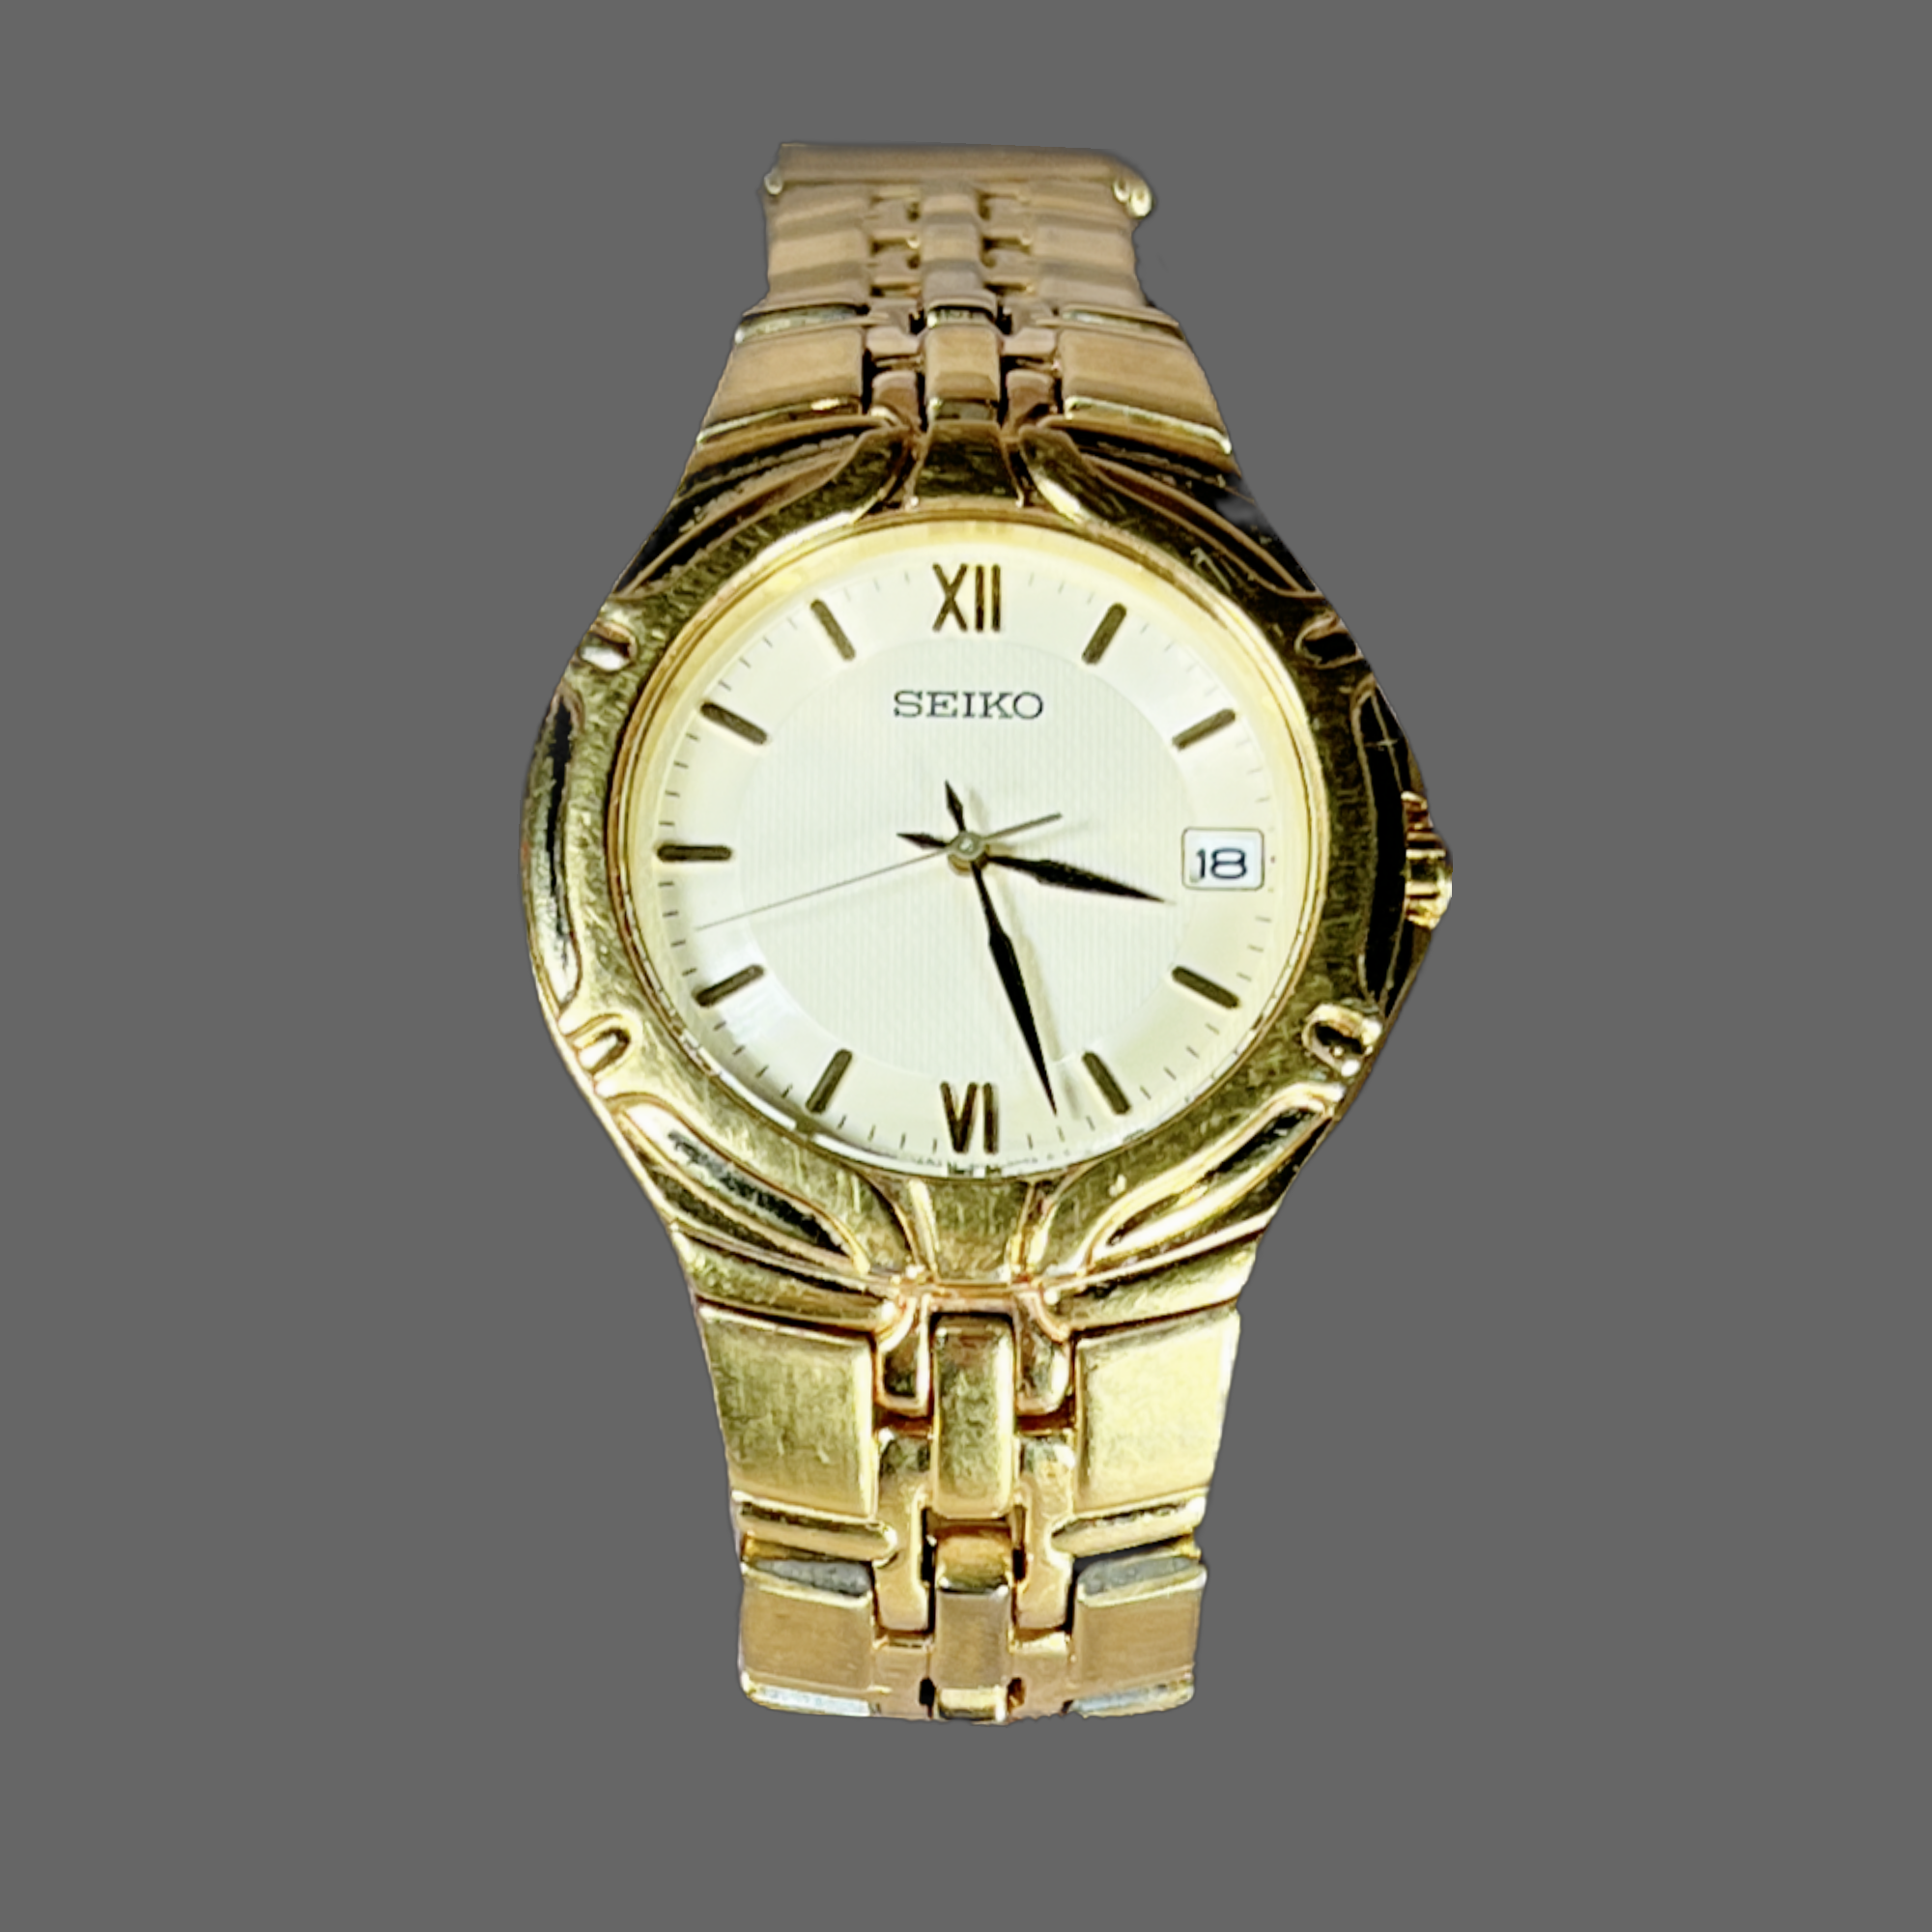 Seiko 7N42-6C10 wristwatch | Kitschy Trinkets